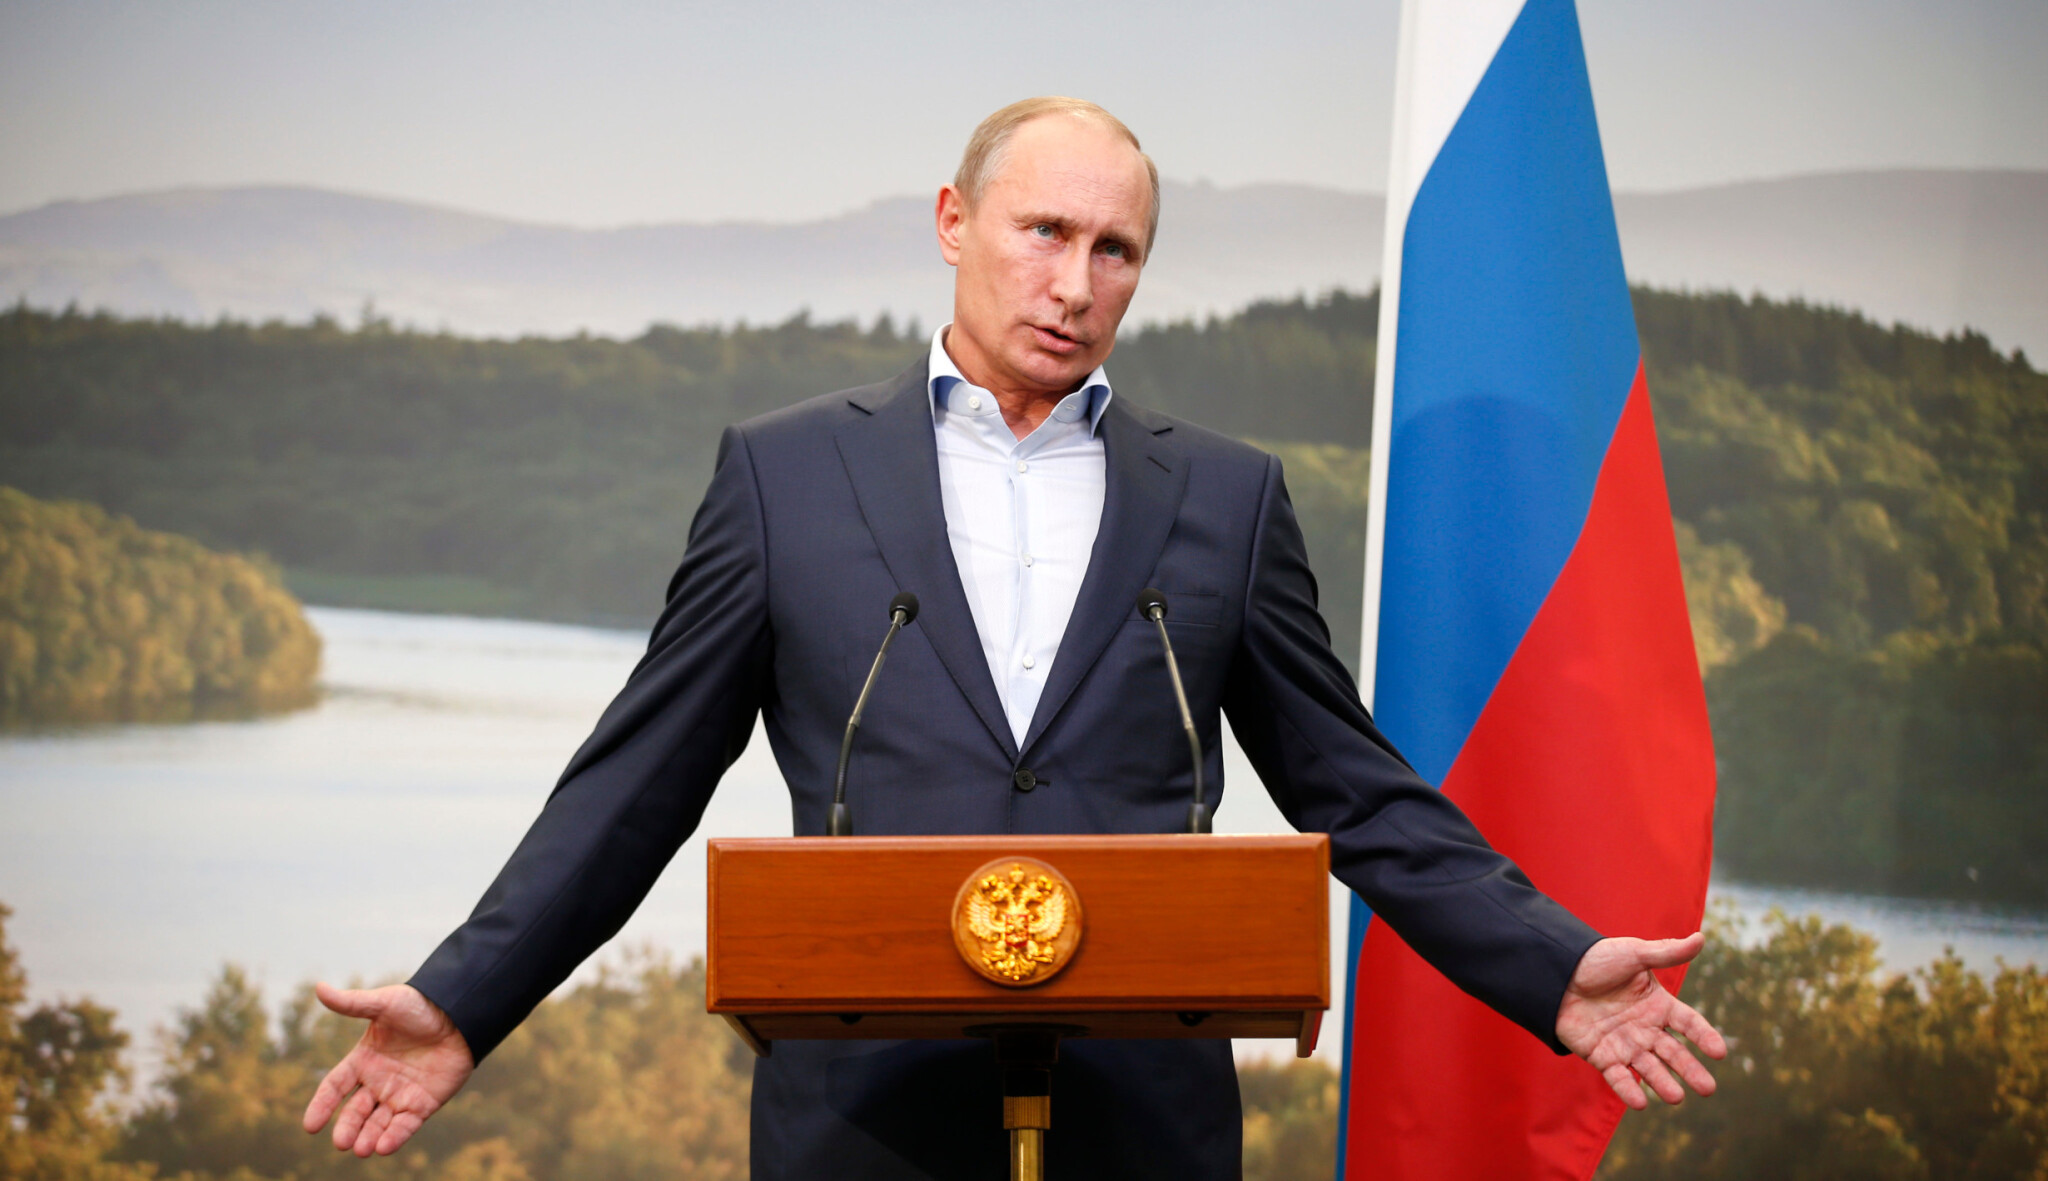 Putin musí odejít. Je to jediná naděje pro Rusko i Ukrajinu. Ale jak a kam?